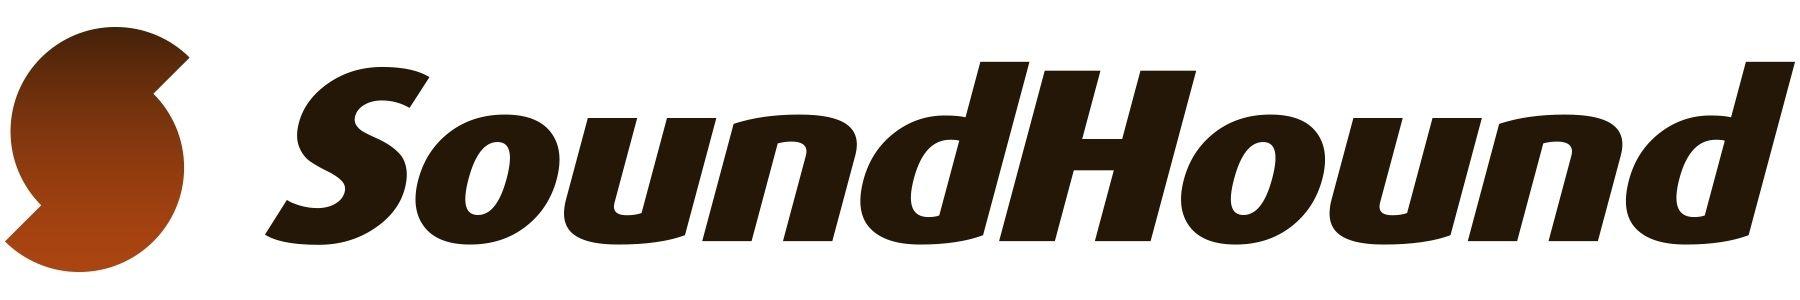 SoundHound Logo - SoundHound Inc. Introduces Hound, Unprecedented Speech Recognition + ...